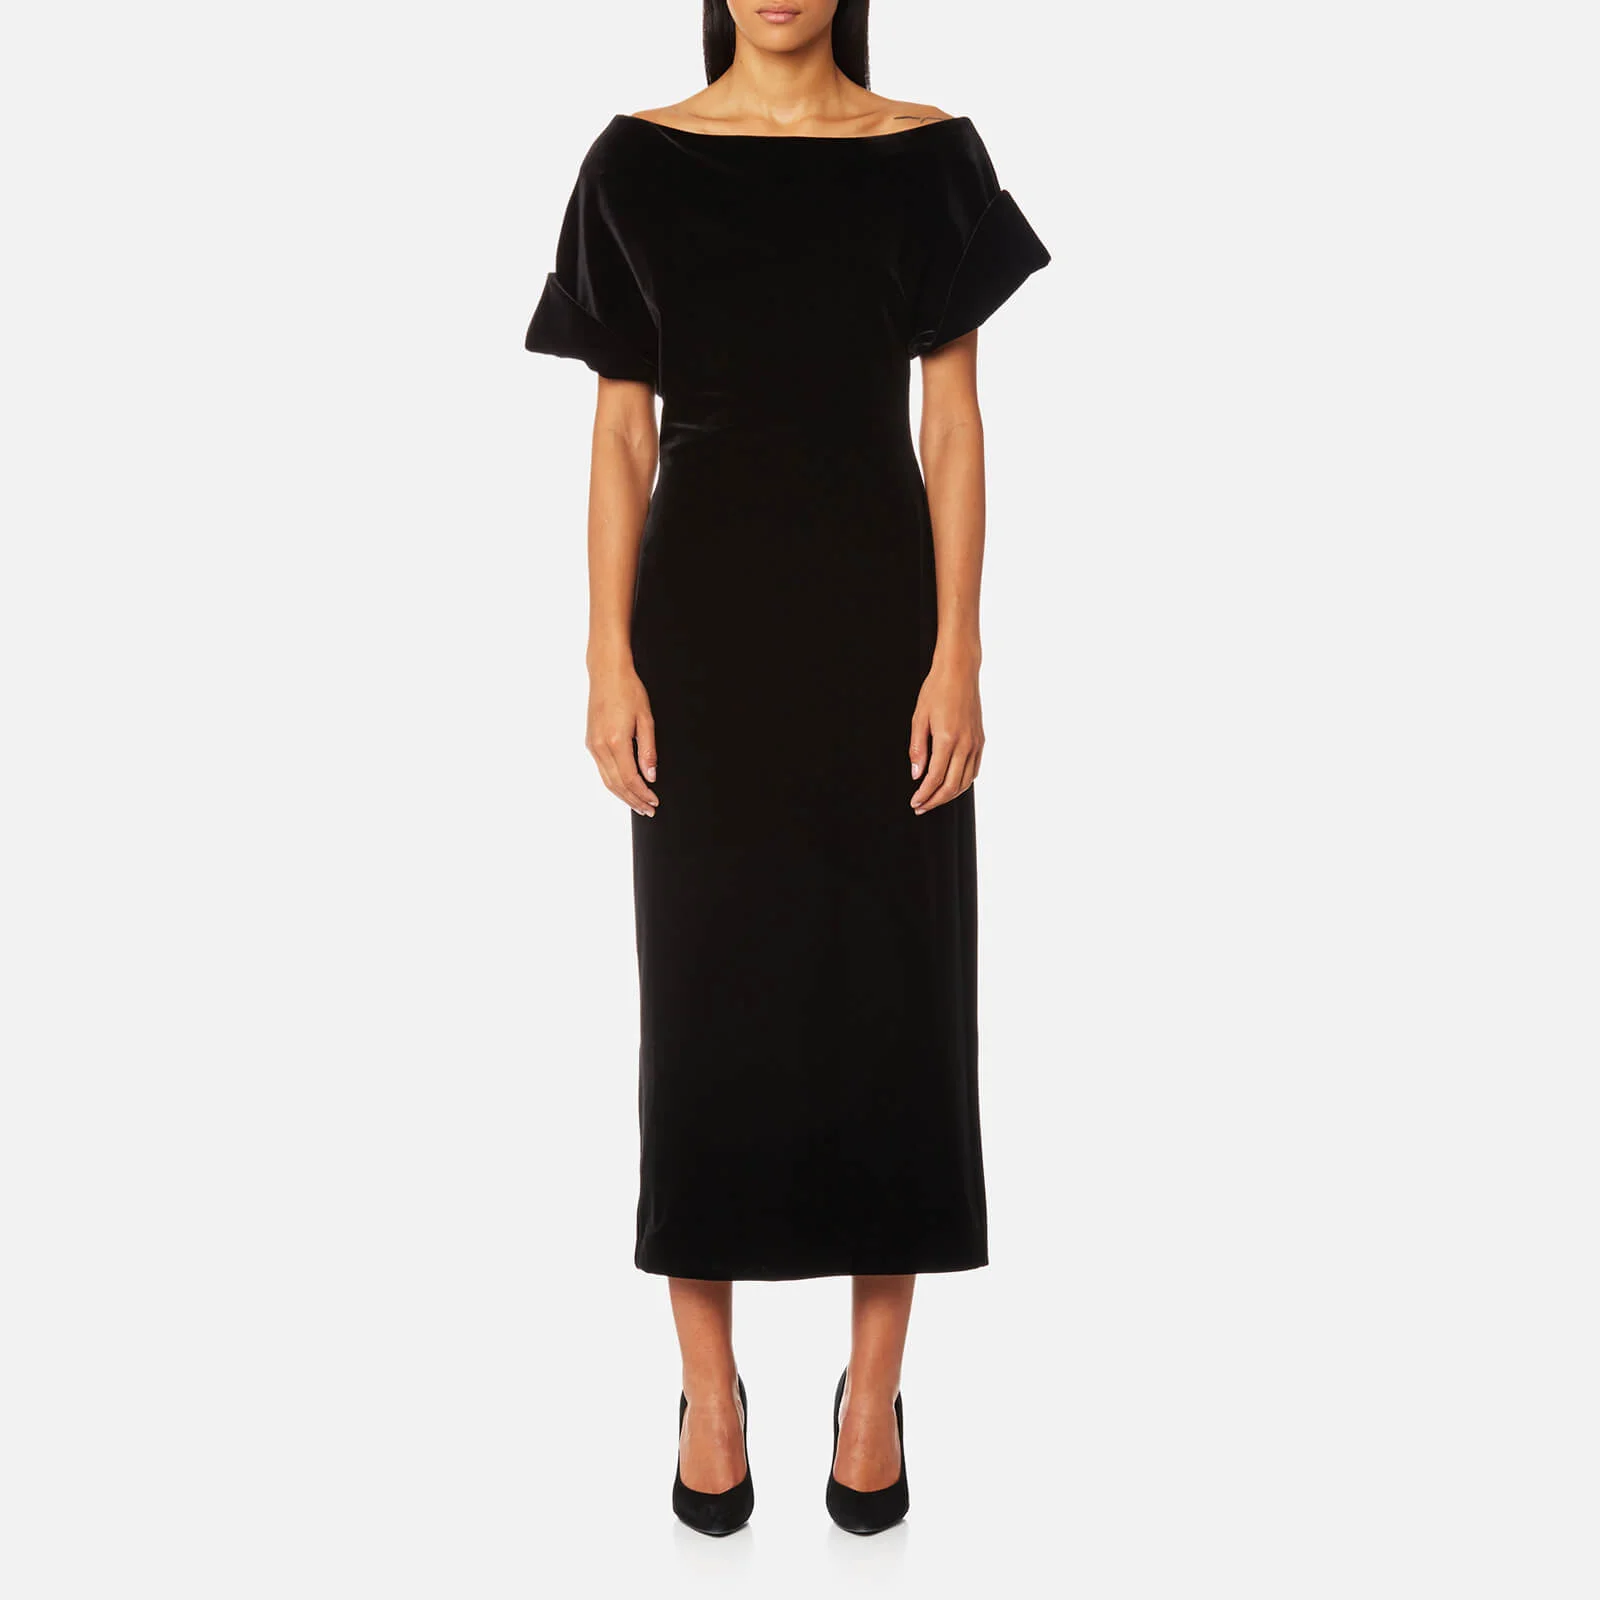 Christopher Kane Women's Stretch Velvet Dress - Black Image 1